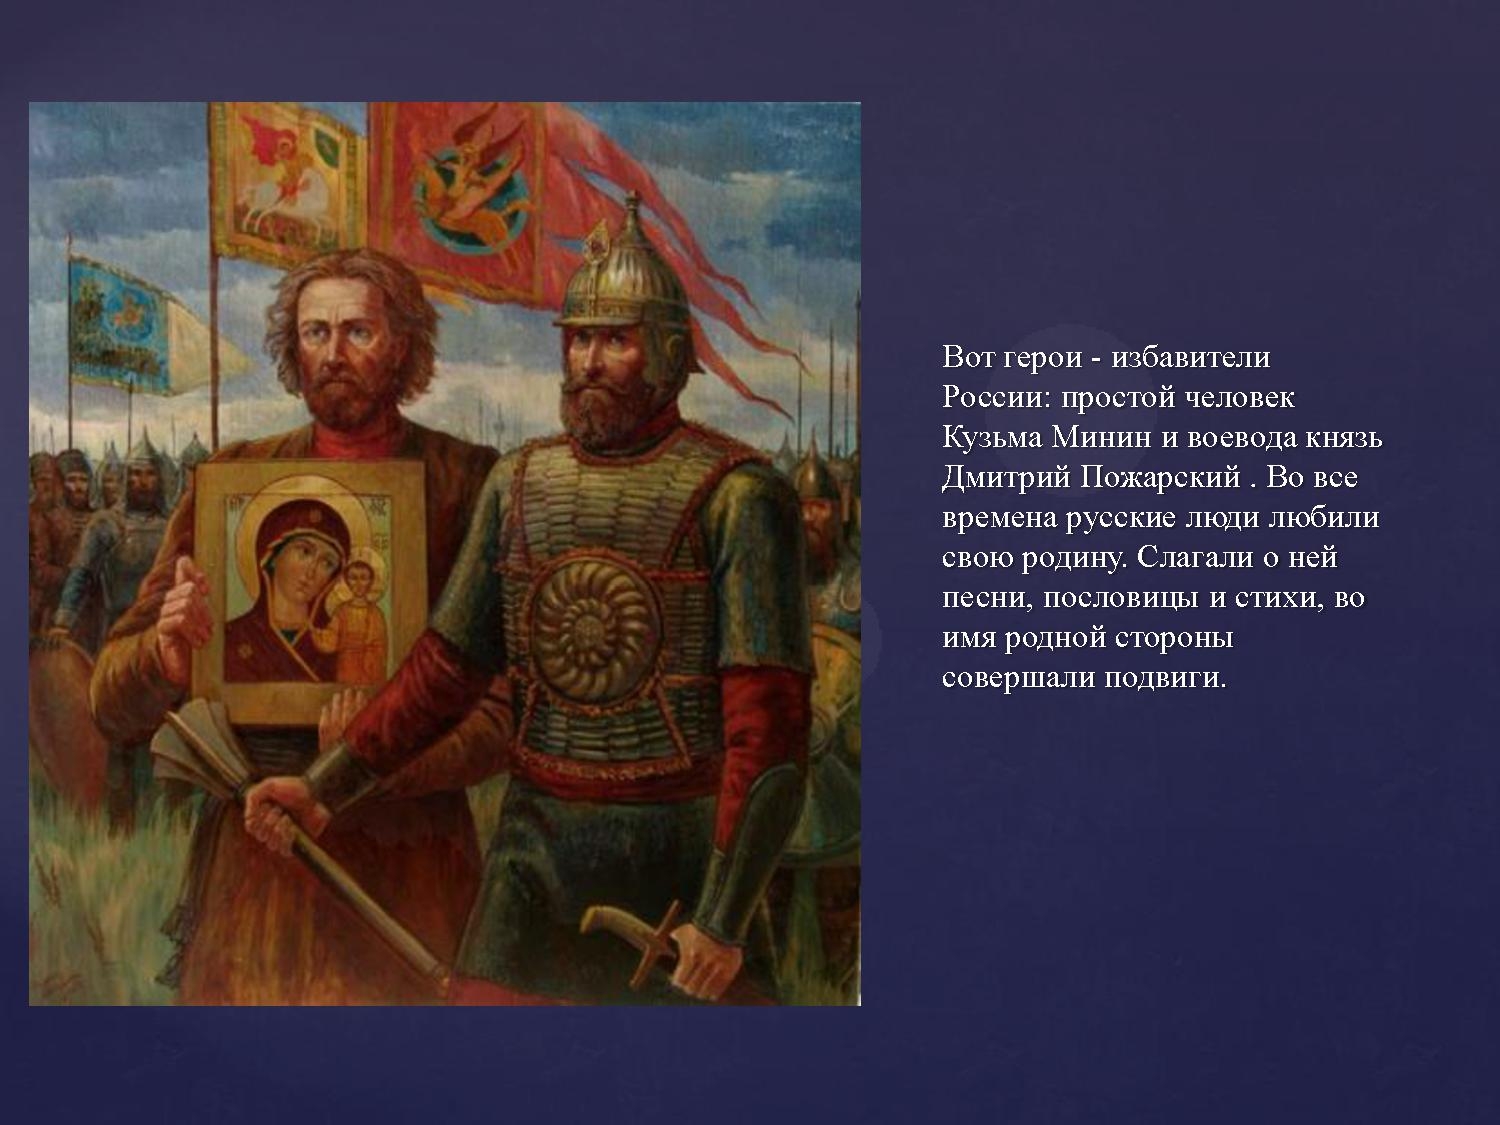 Русский национальный герой прославившийся спасением. Скотти Минин и Пожарский картина. Минин и Пожарский Скотти 1850.